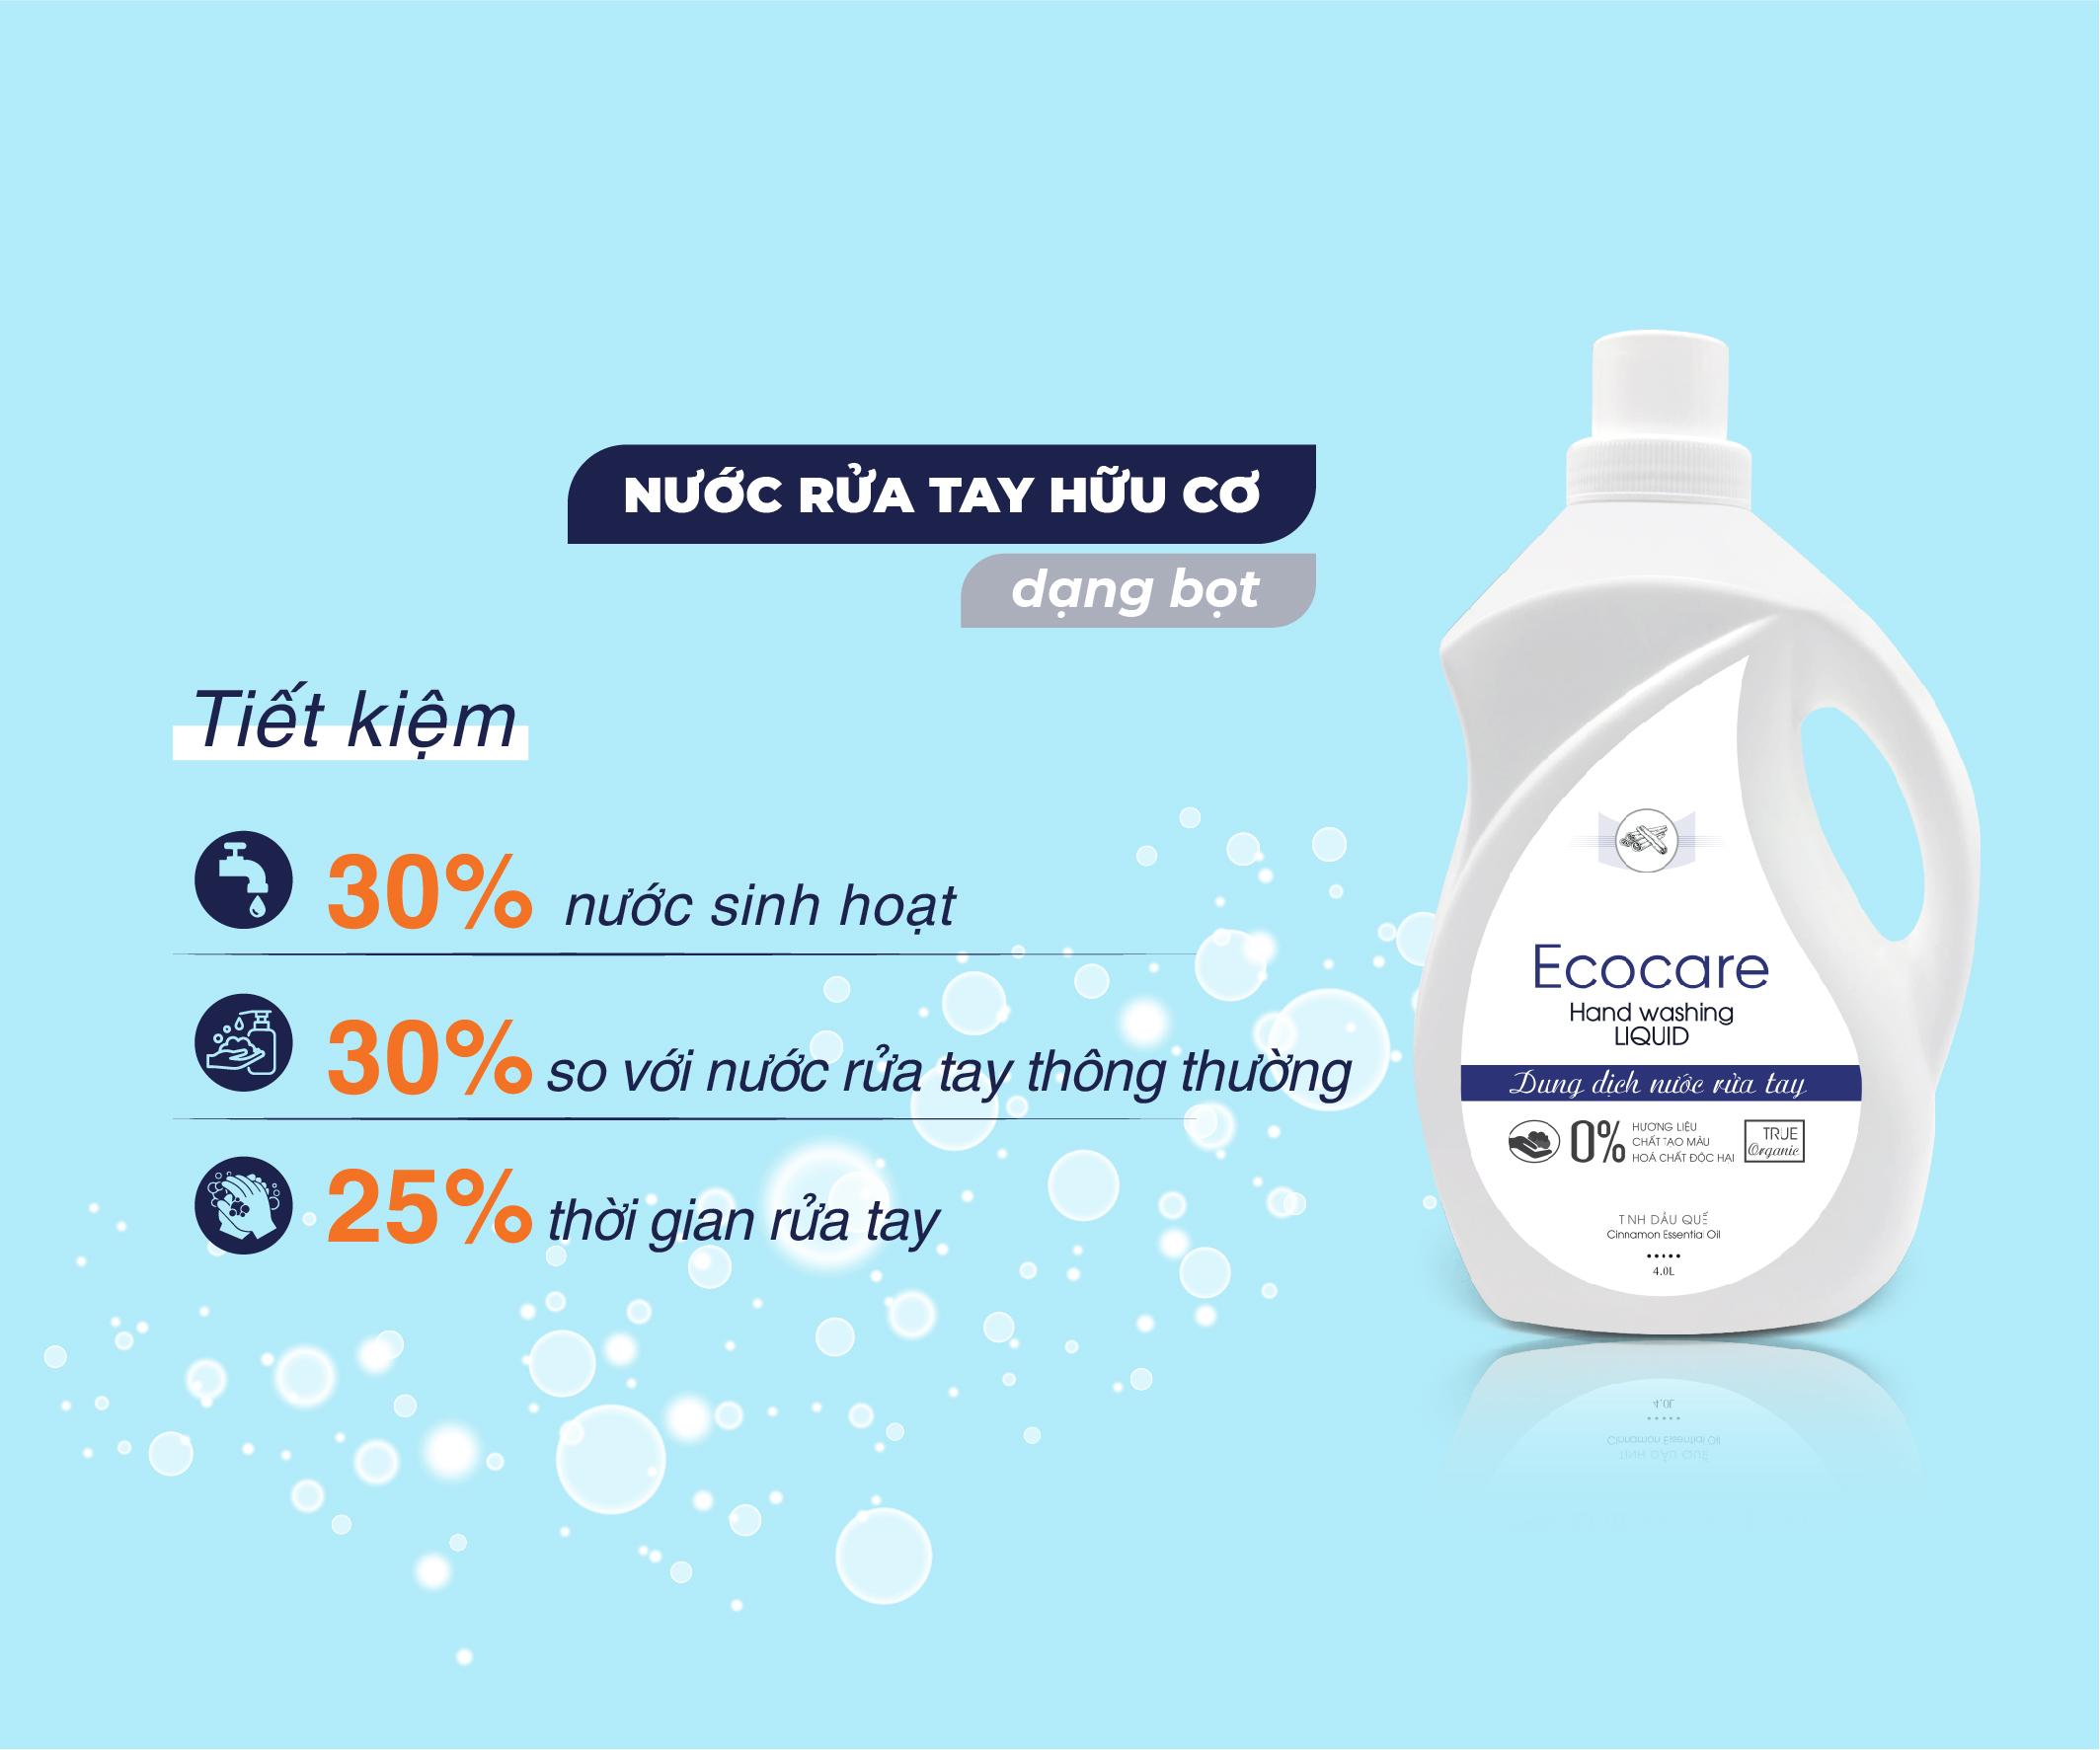 Nước rửa tay hữu cơ diệt khuẩn dạng bọt hương Cam 4000ml thương hiệu Ecocare ( tặng kèm vỏ tạo bọt)